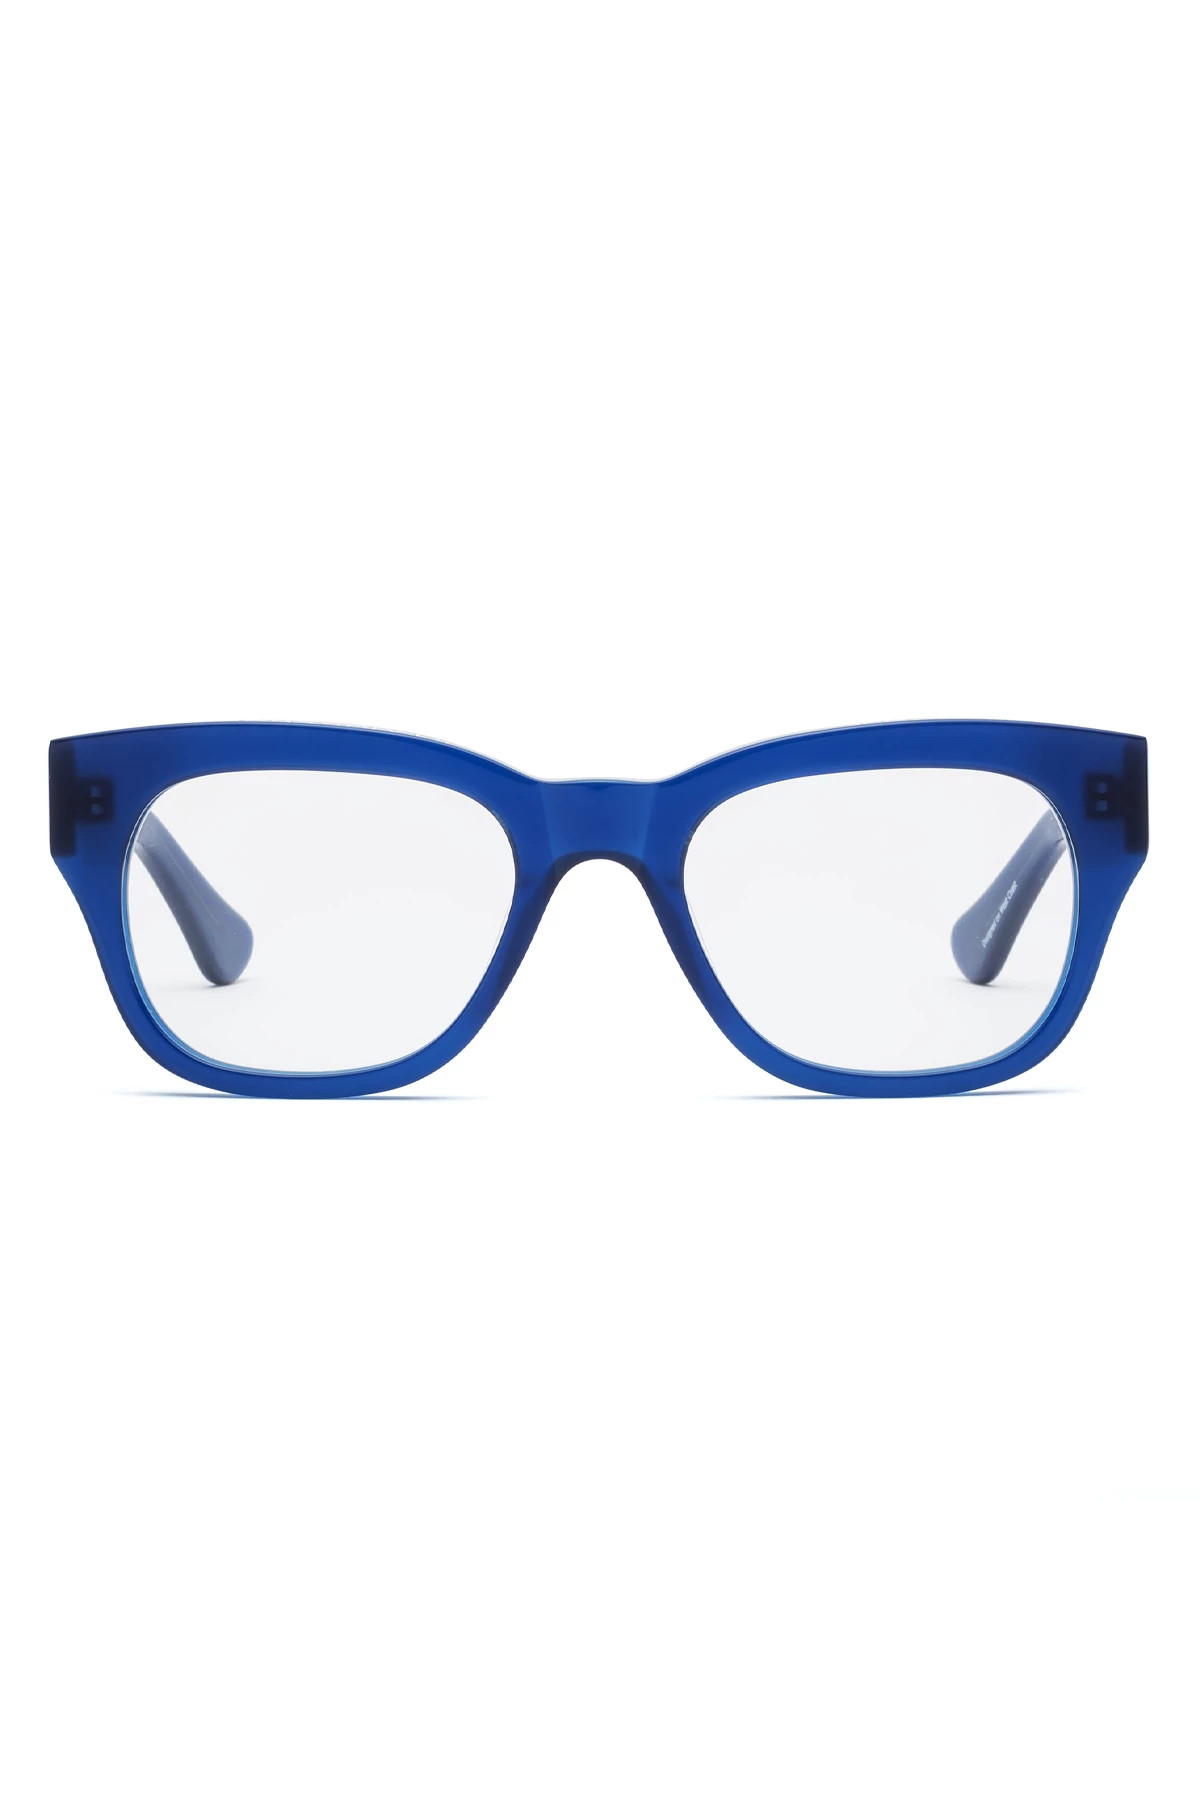 MINOR BLUES Miklos Blue Light Filter Glasses image number 2